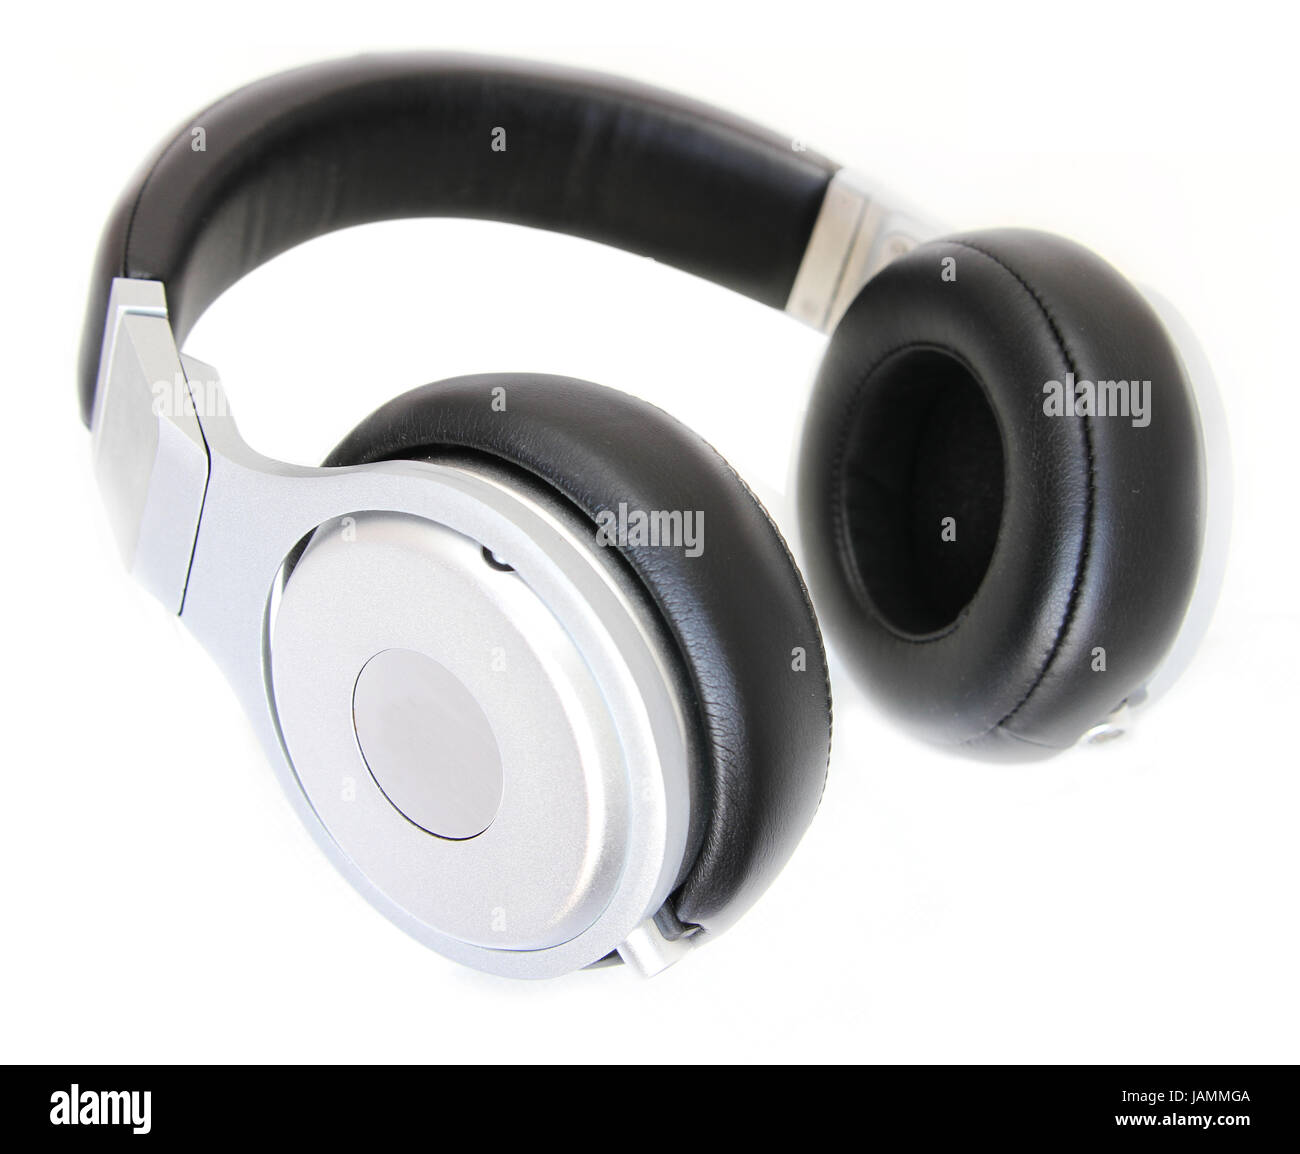 headphones isolated in white Stock Photo